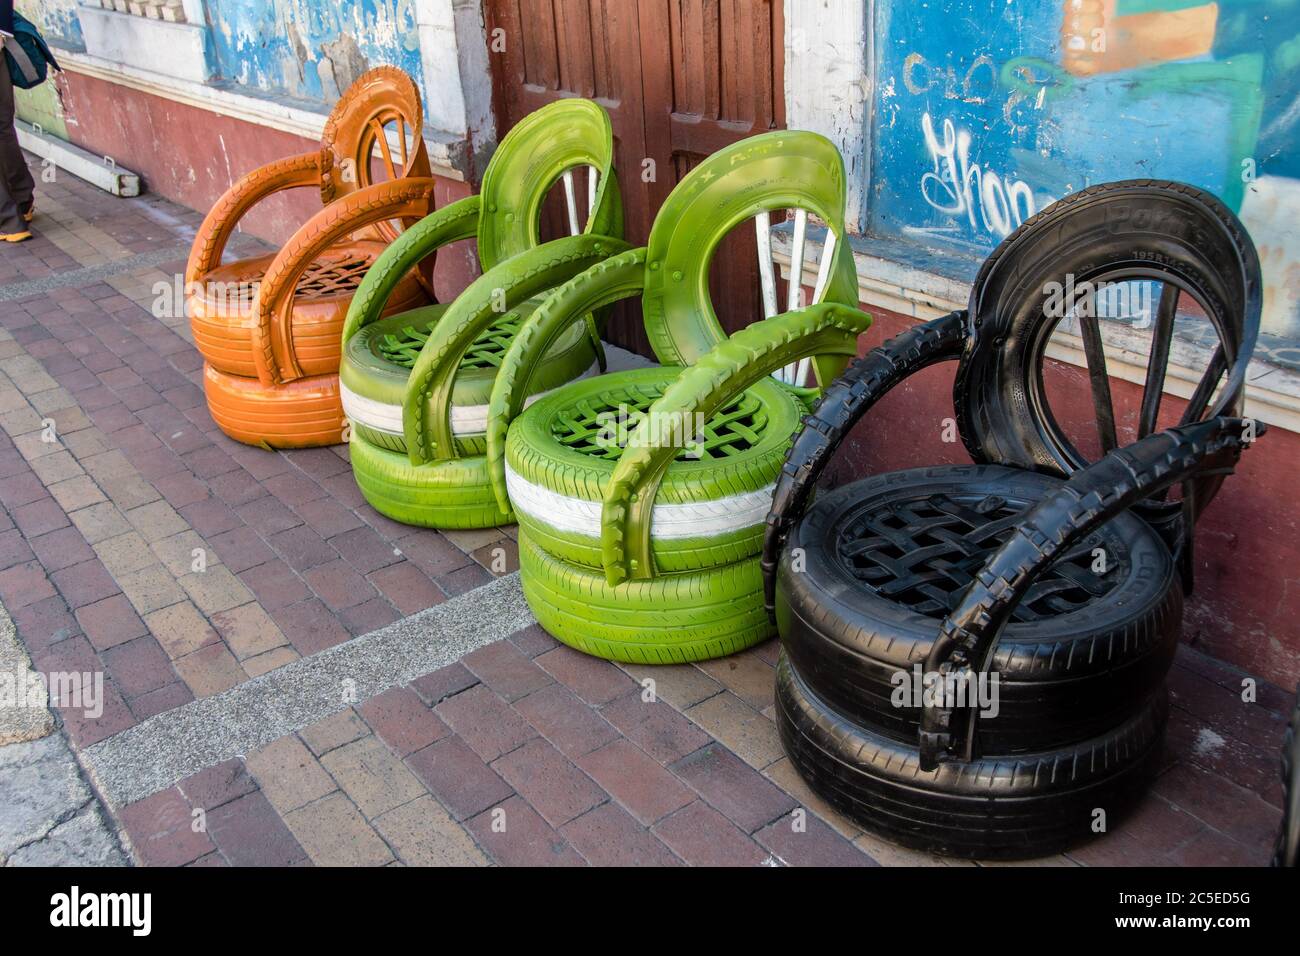 Les vieux pneus sont recyclés et réutilisés pour créer de belles chaises de jardin, à Guano, près de Riobamba, en Équateur Banque D'Images